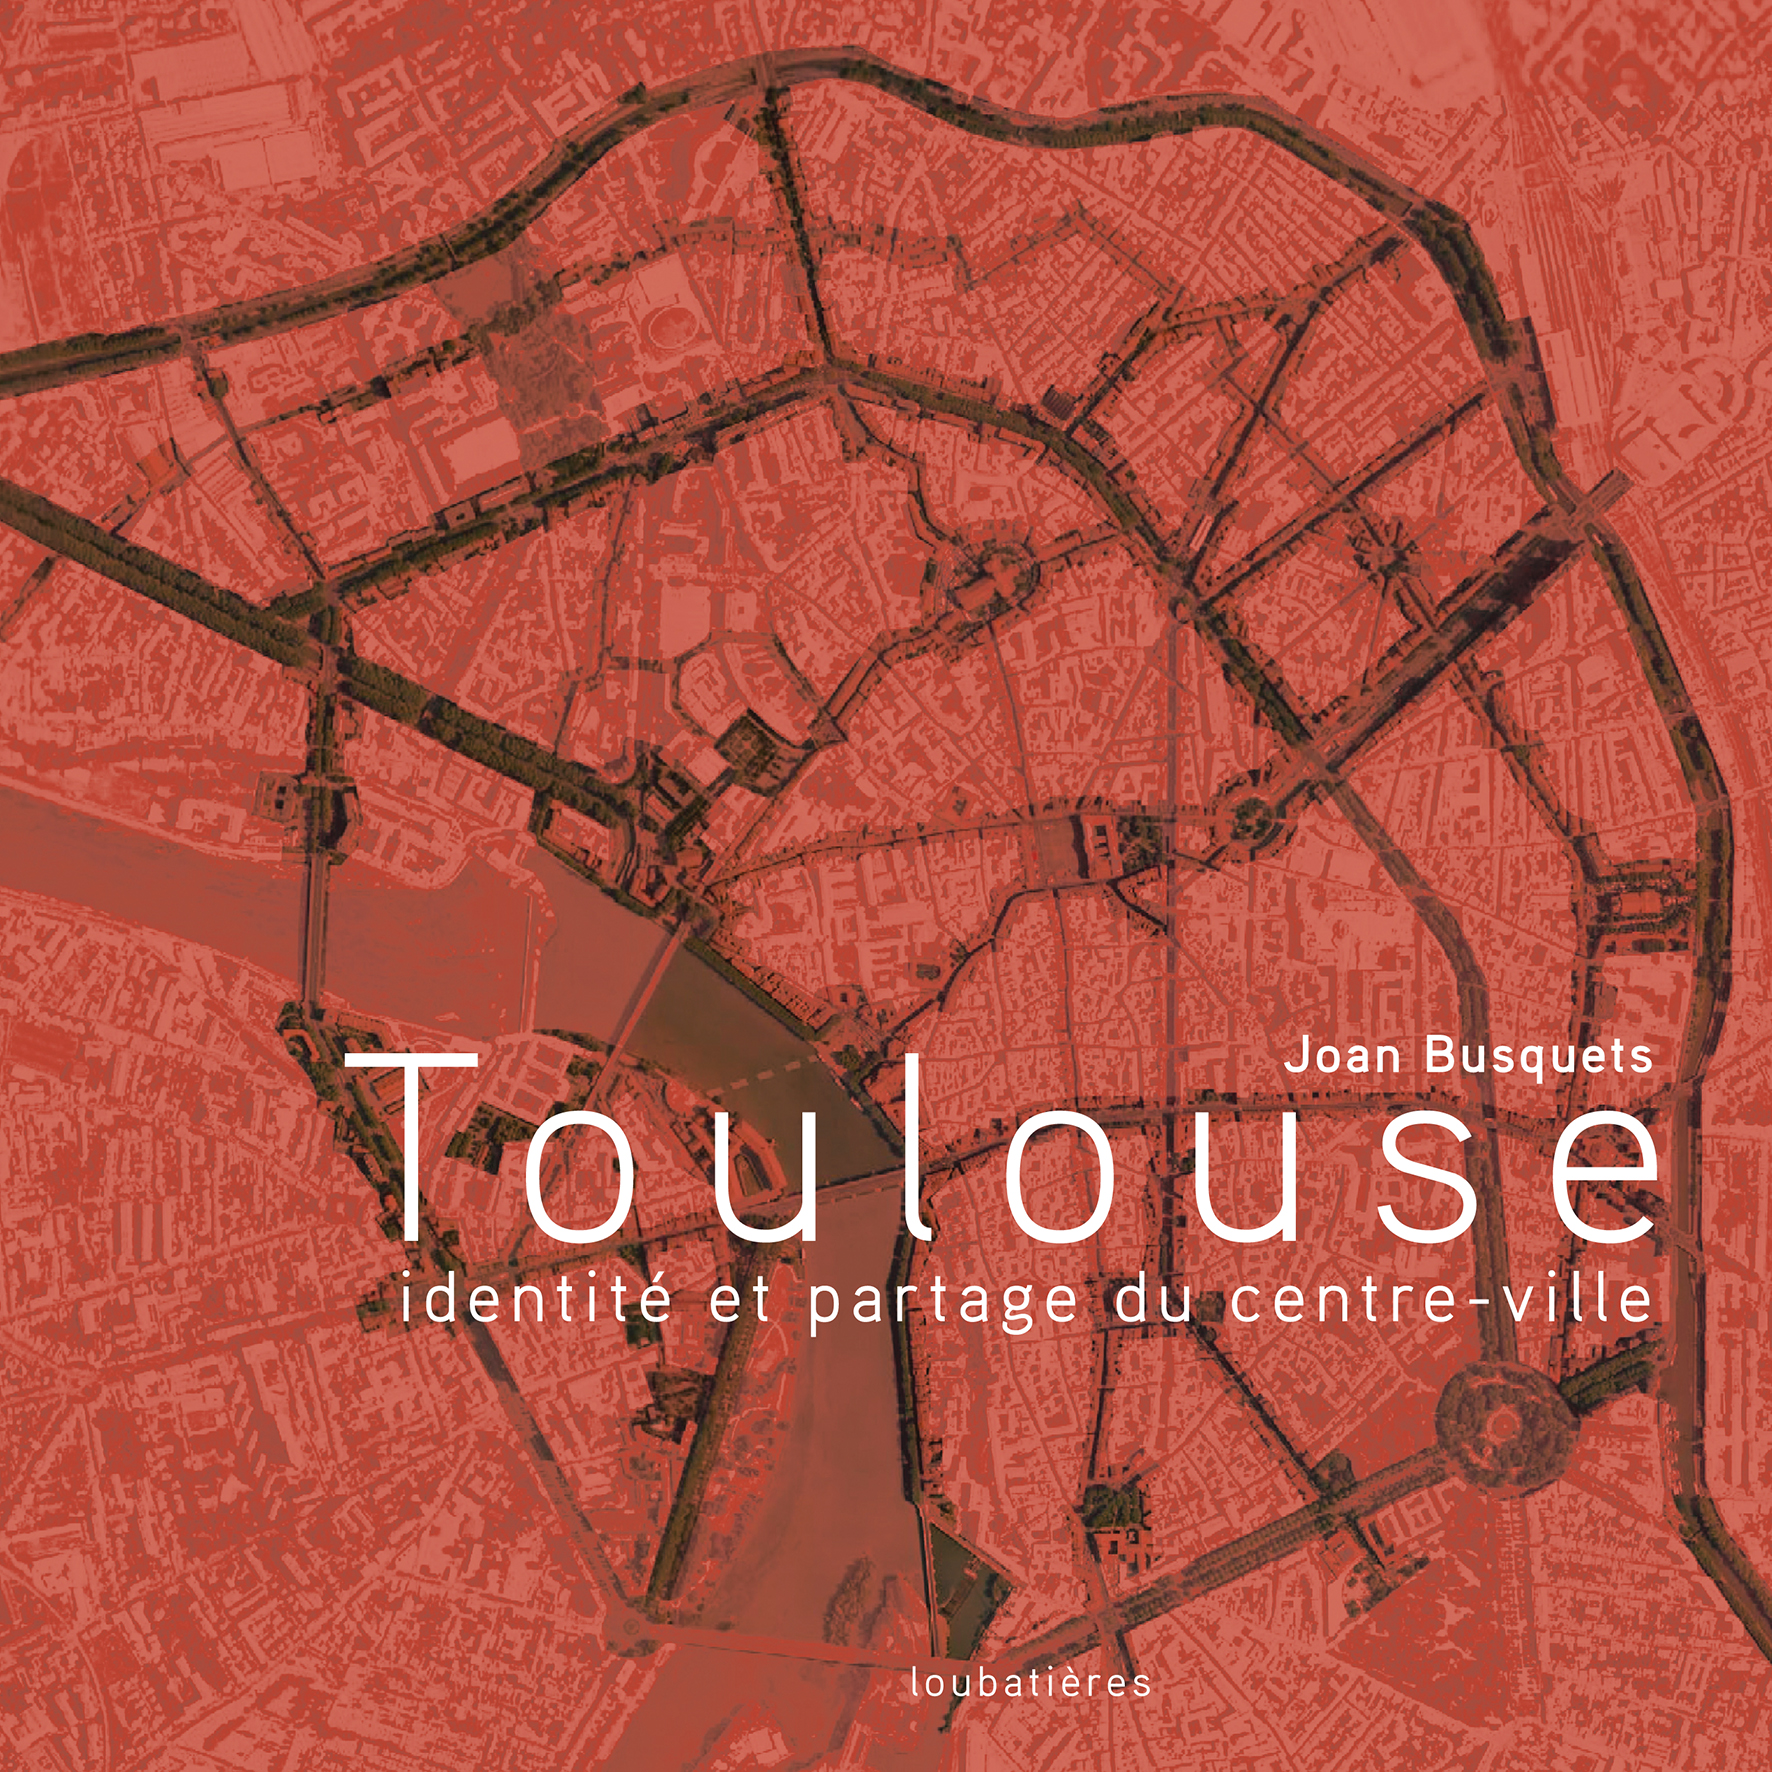 Toulouse, identité et partage du centre-ville